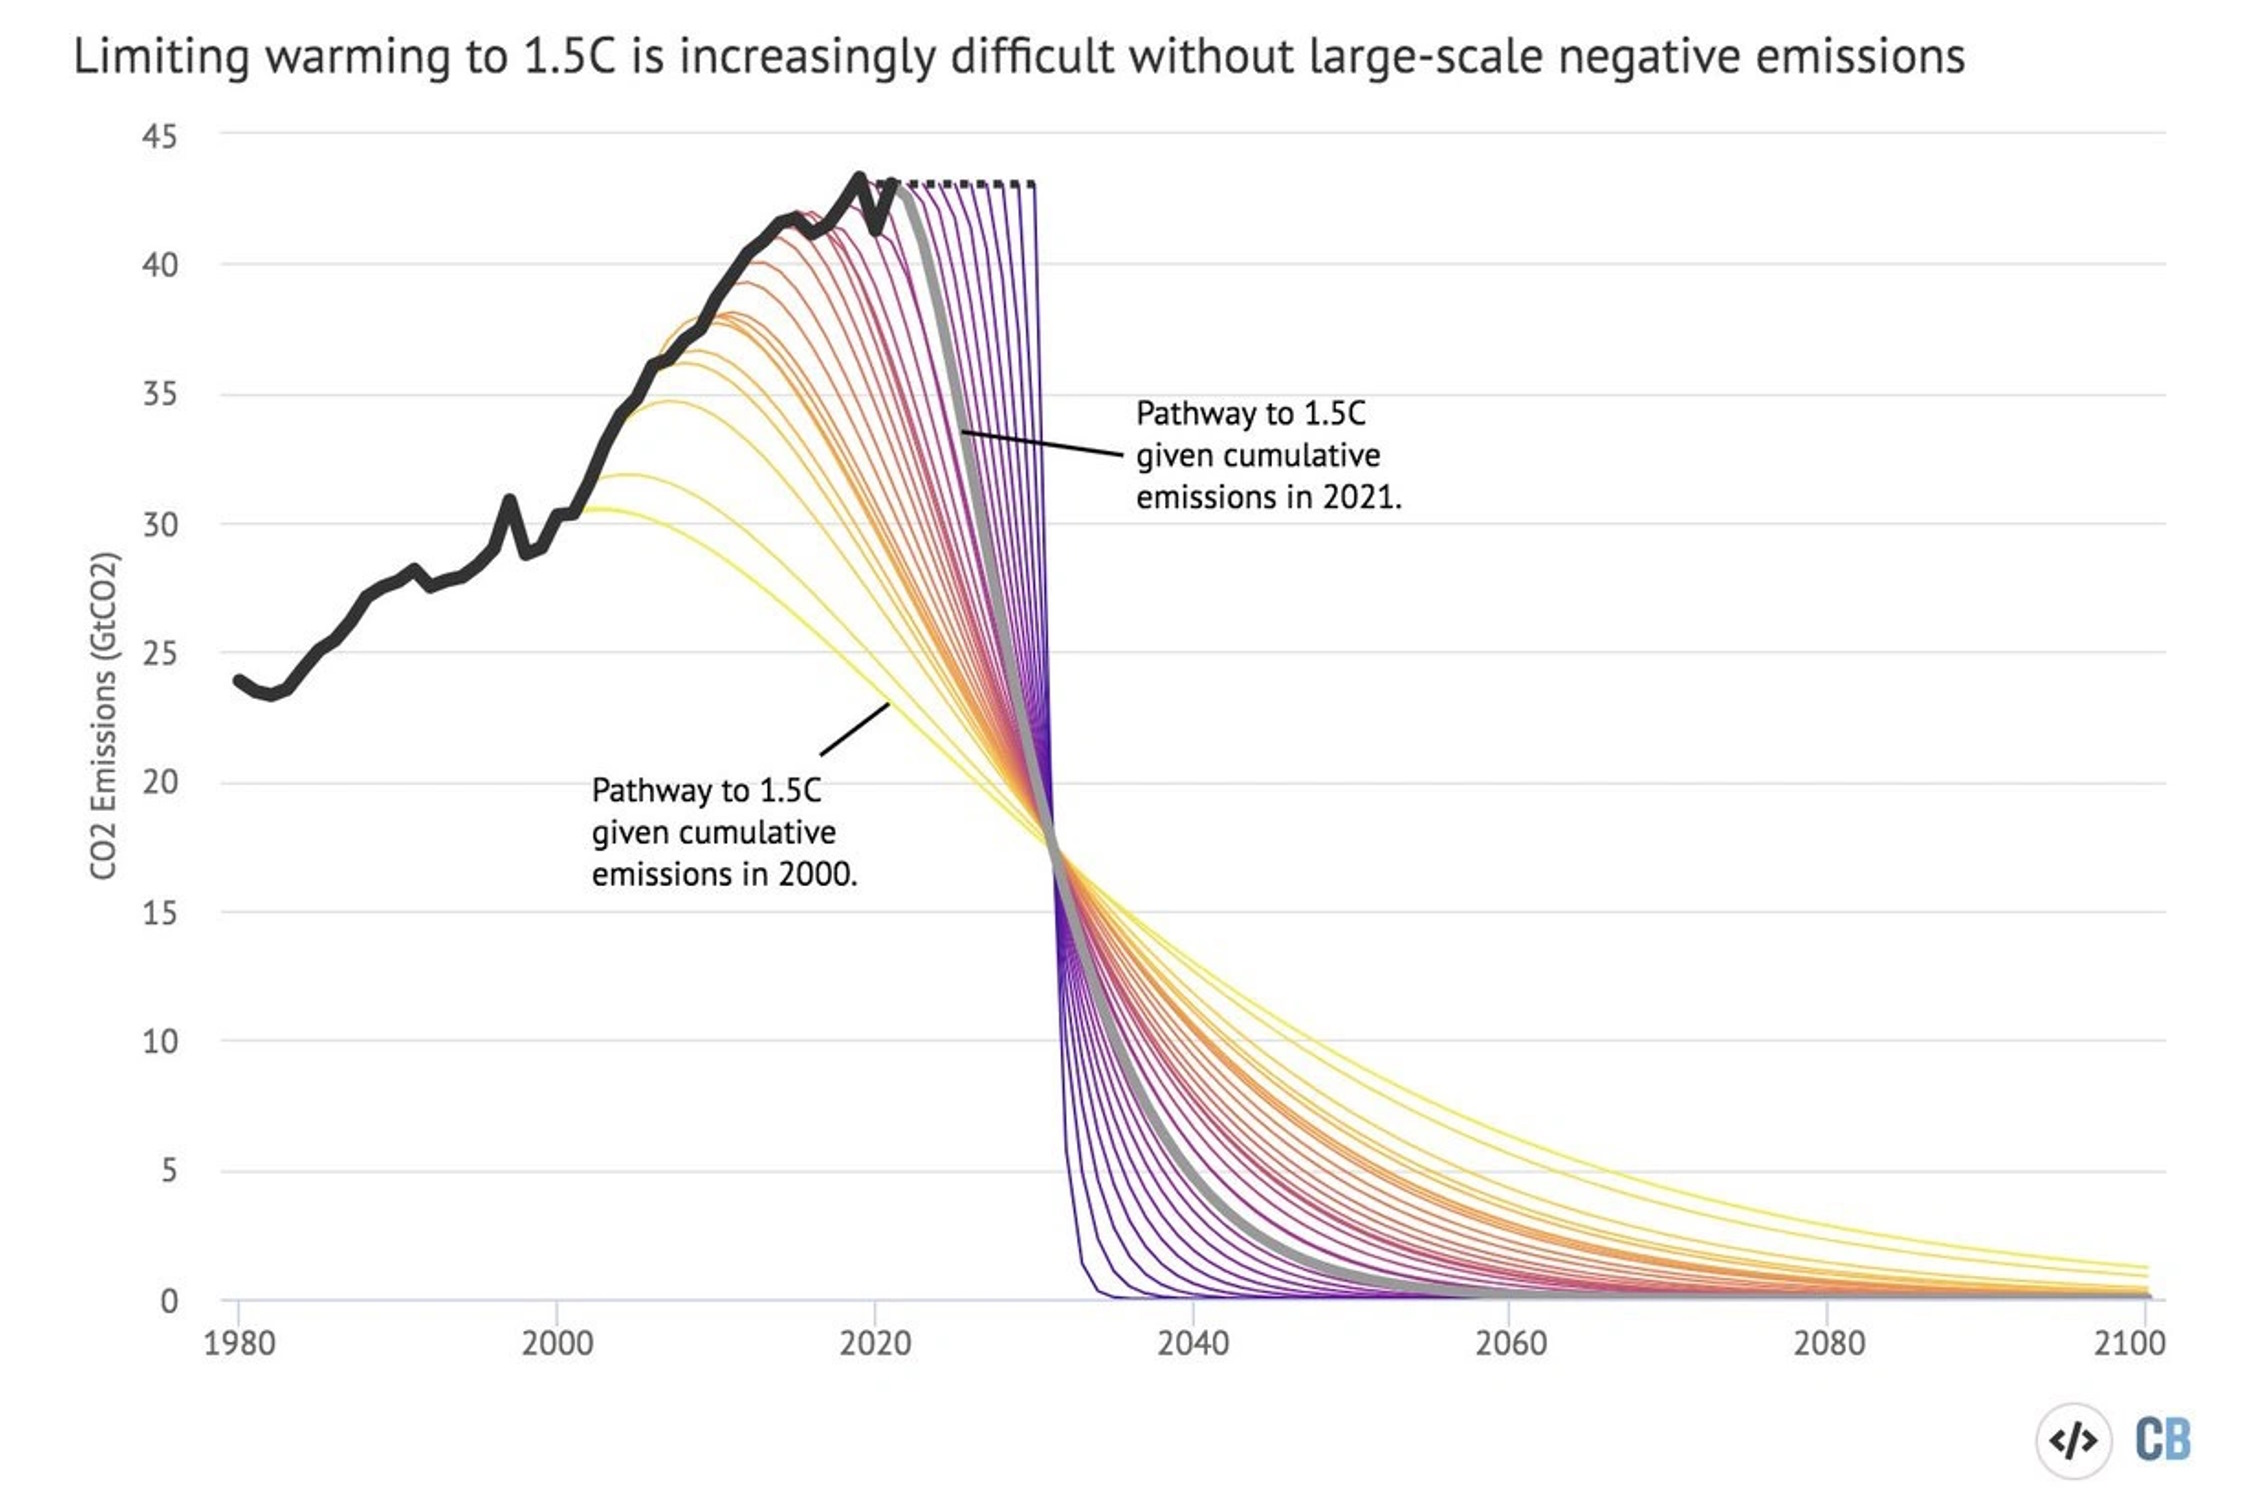 Bild: Carbon Brief Anpassungskurve. Grafik nach Robbie Andrews, aktualisiert durch Carbon Brief, climatecrock.files.wordpress.com